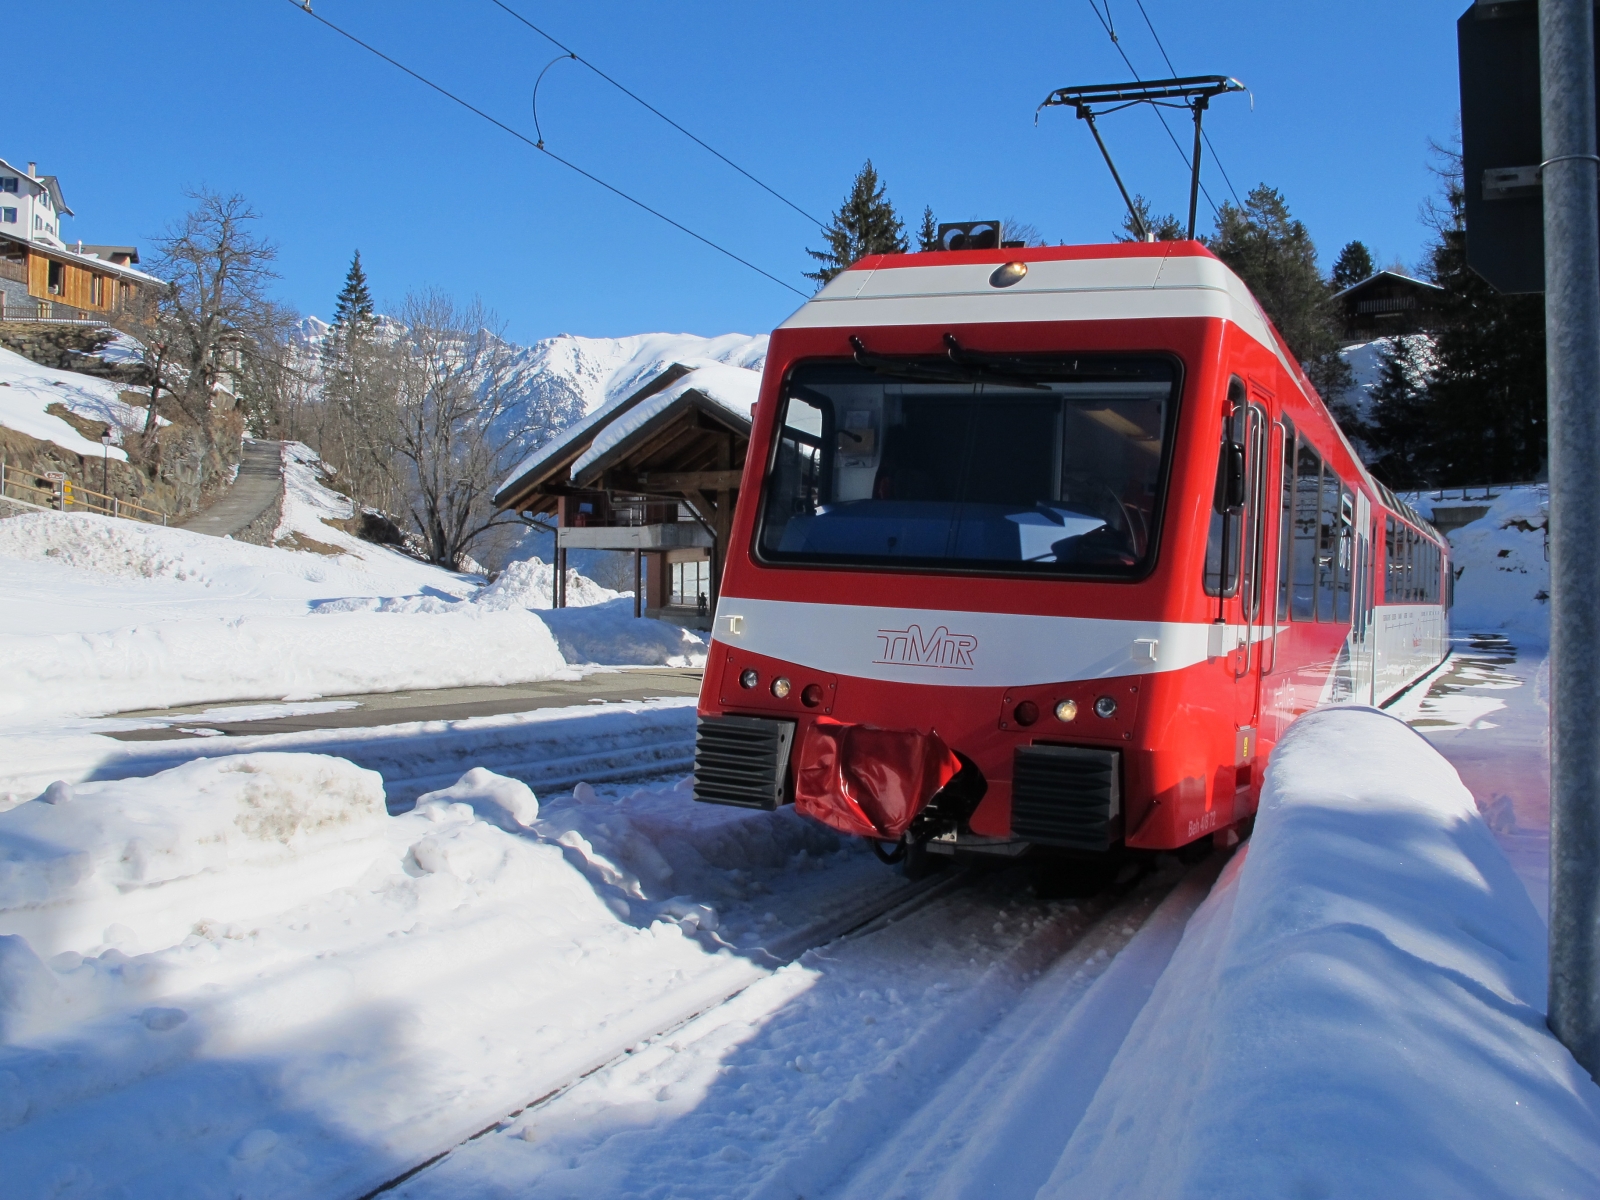 Les trains en partance de Martigny devront faire demi-tour à Vallorcine pour cet hiver encore. La ligne ne réouvrira complètement qu'en mars prochain.